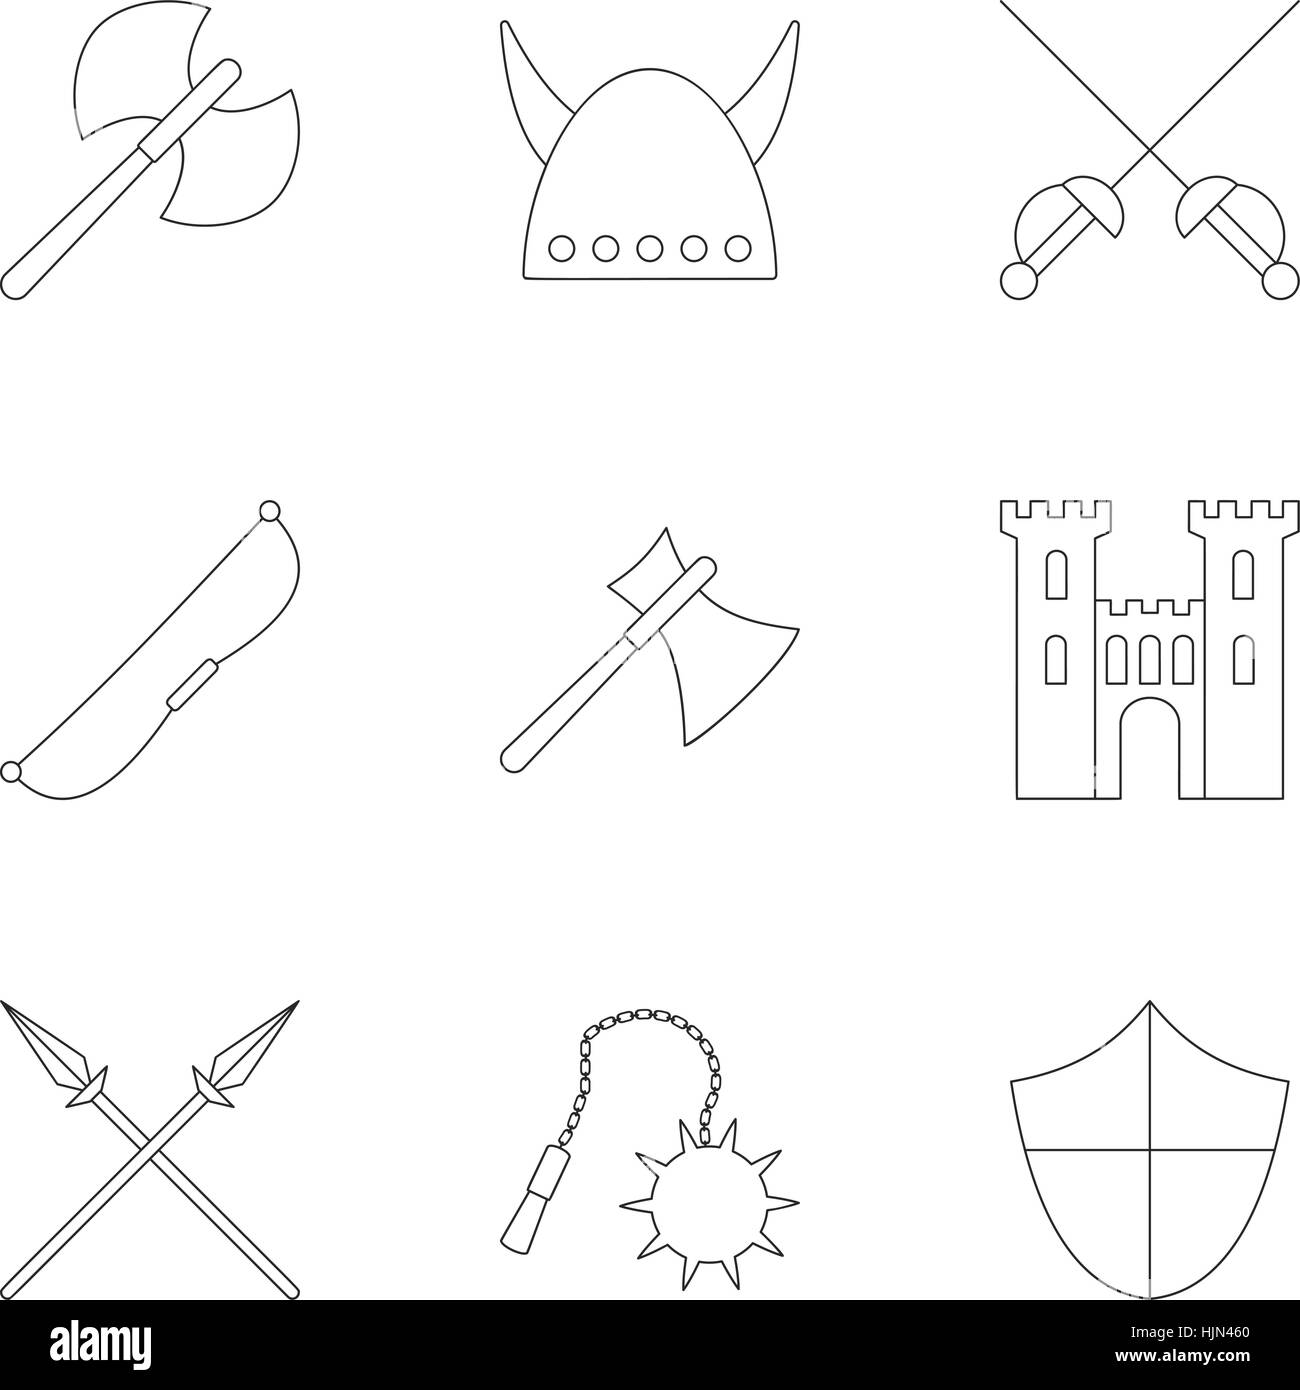 Armures médiévales icons set. Contours illustration de 9 armures médiévales vector icons for web Illustration de Vecteur